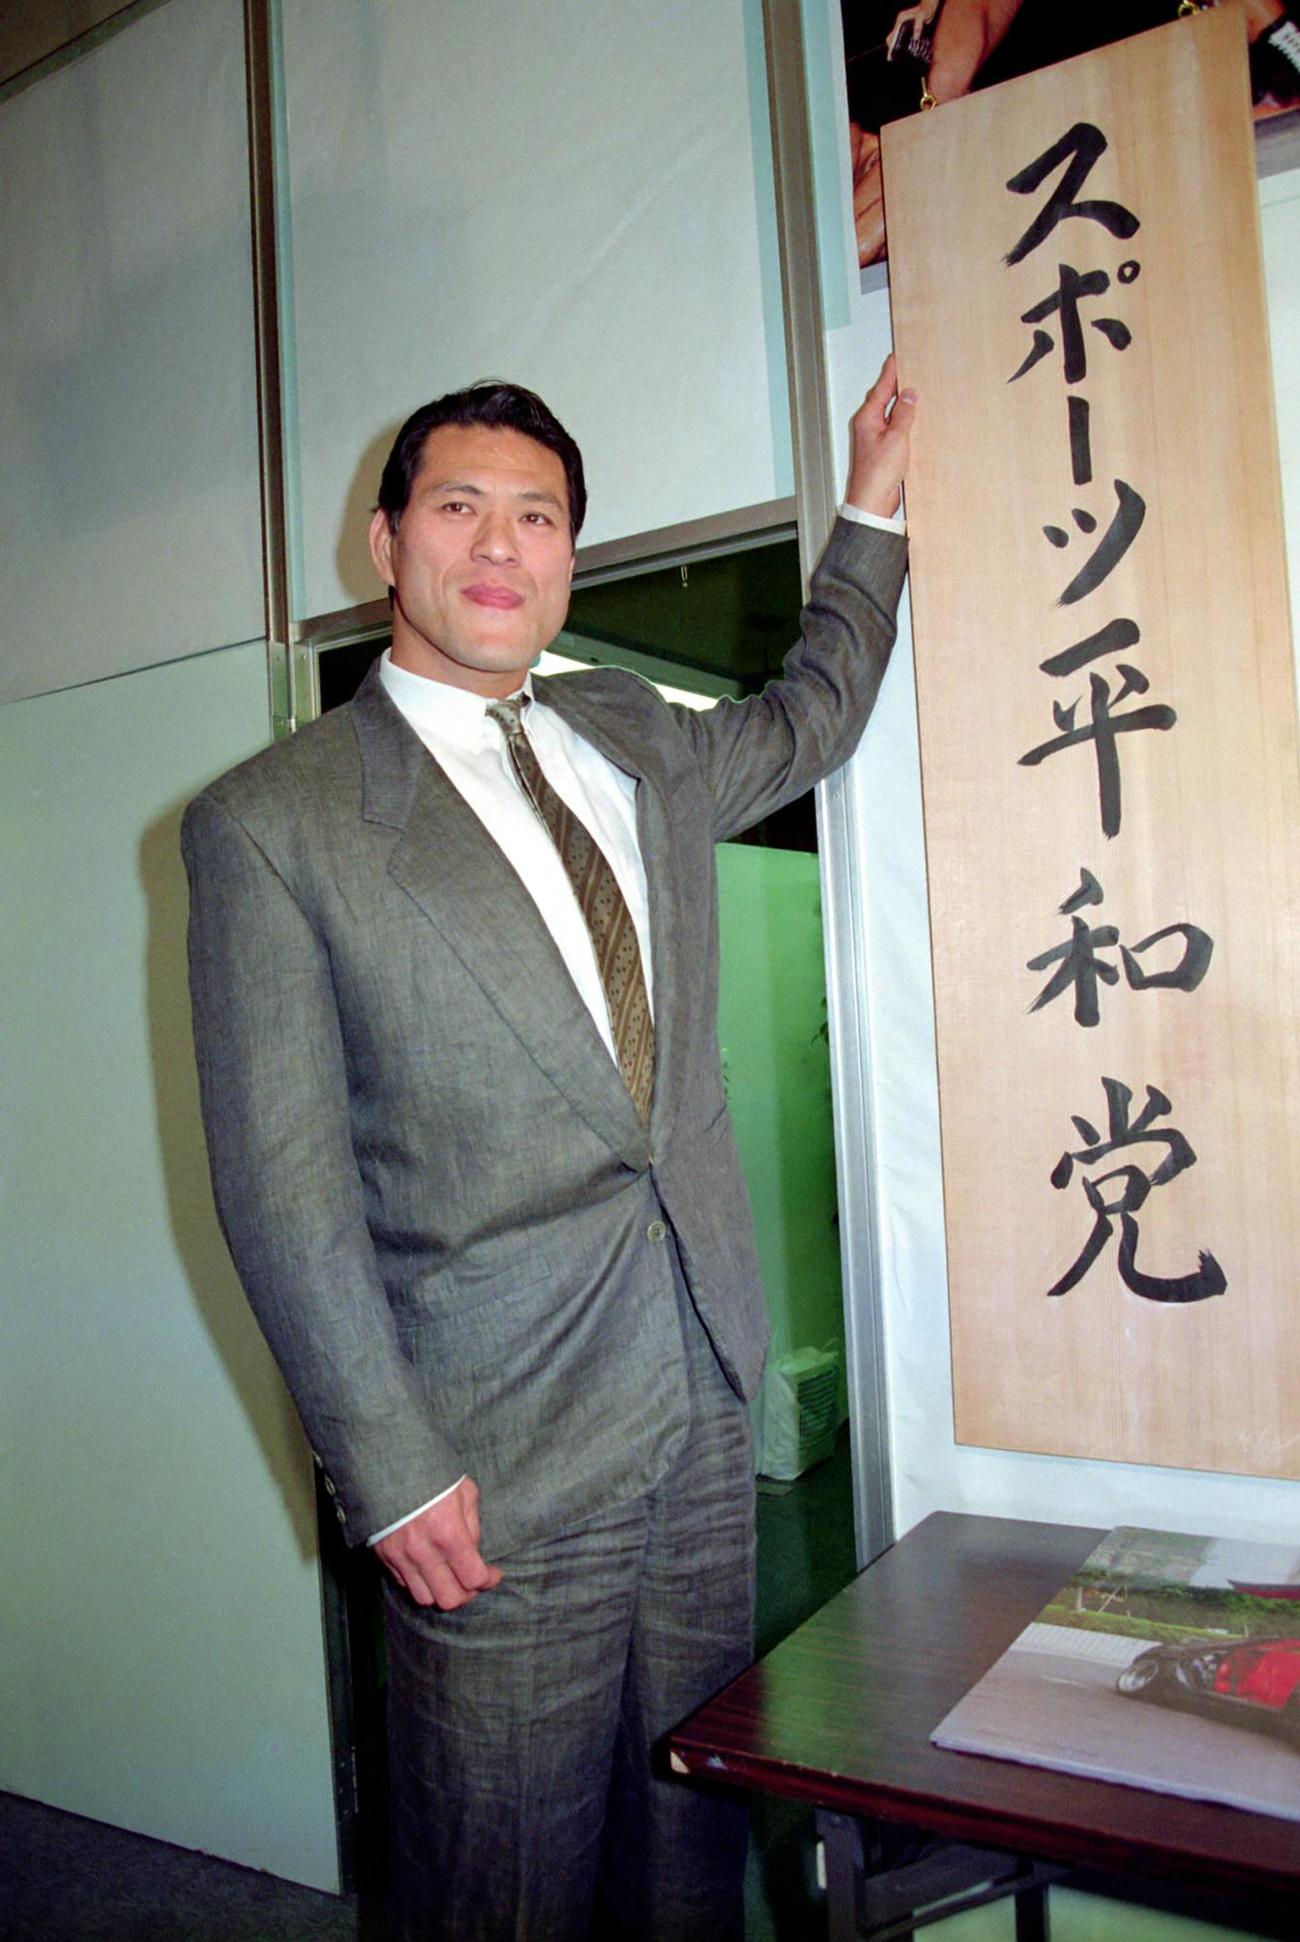 89年、「スポーツ平和党」の表札を手に写真に納まるアントニオ猪木さん